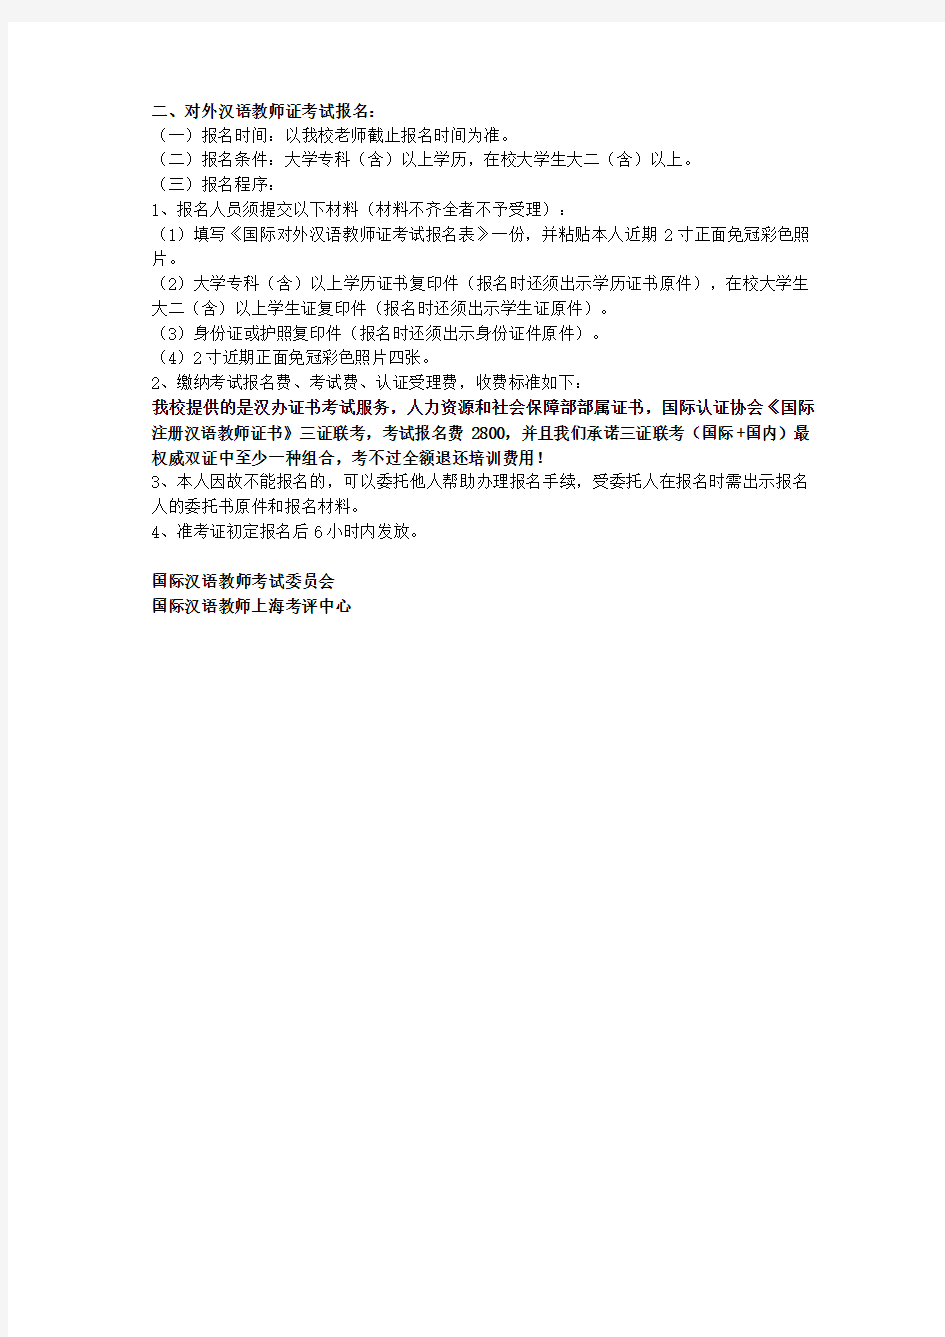 2020年国际注册汉语教师证考试通知